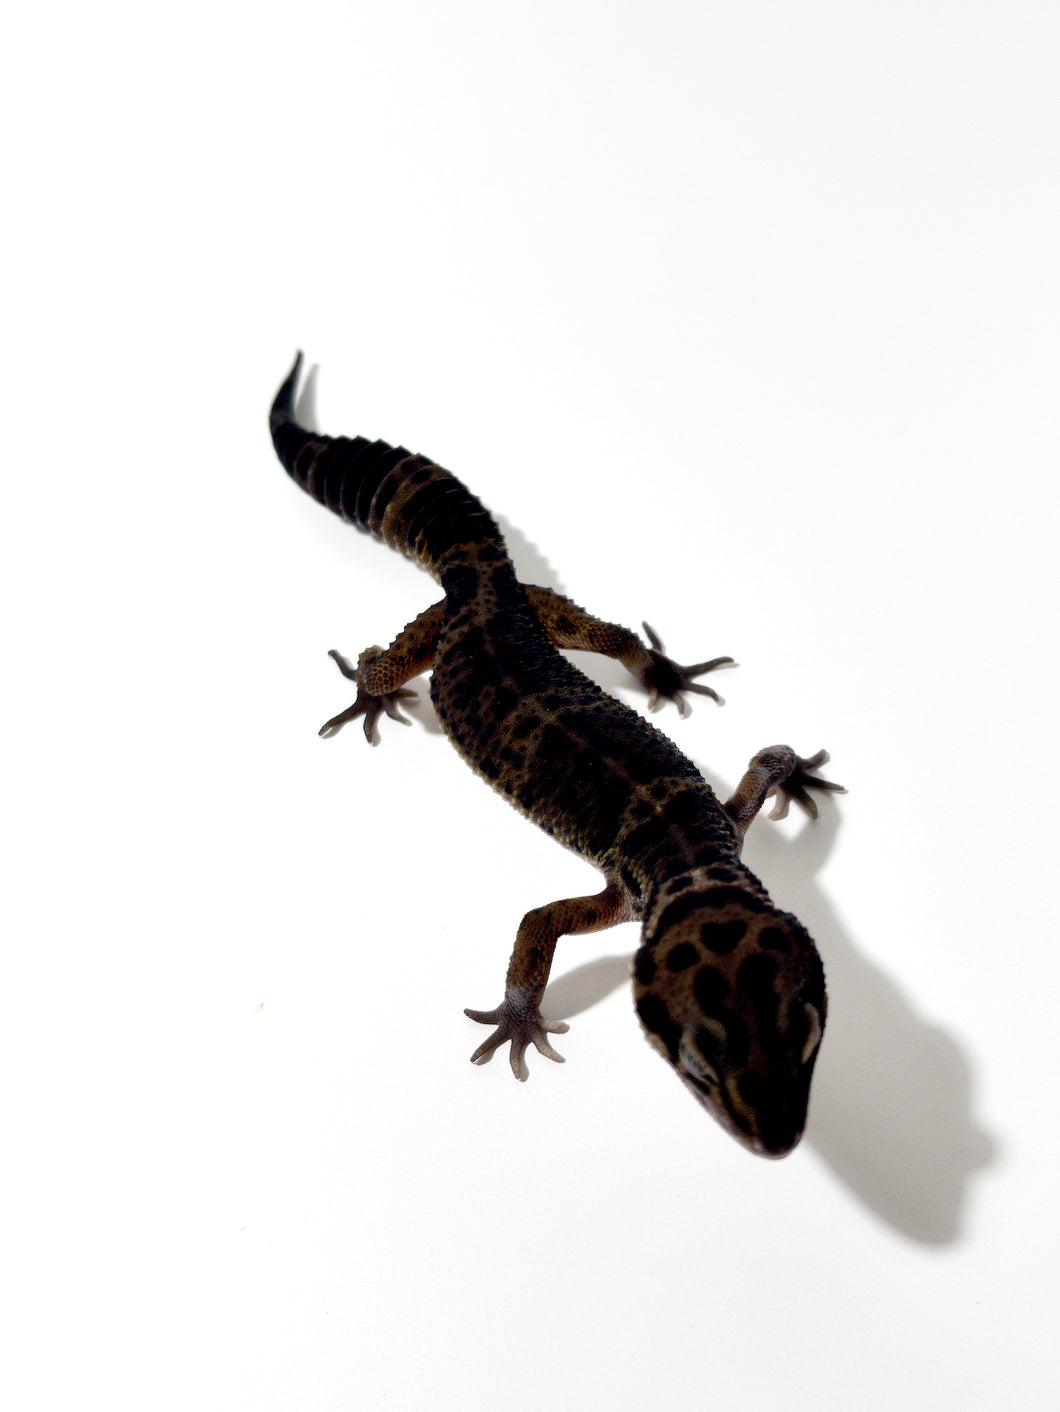 Black Night Cross Leopard Gecko  - July 2022